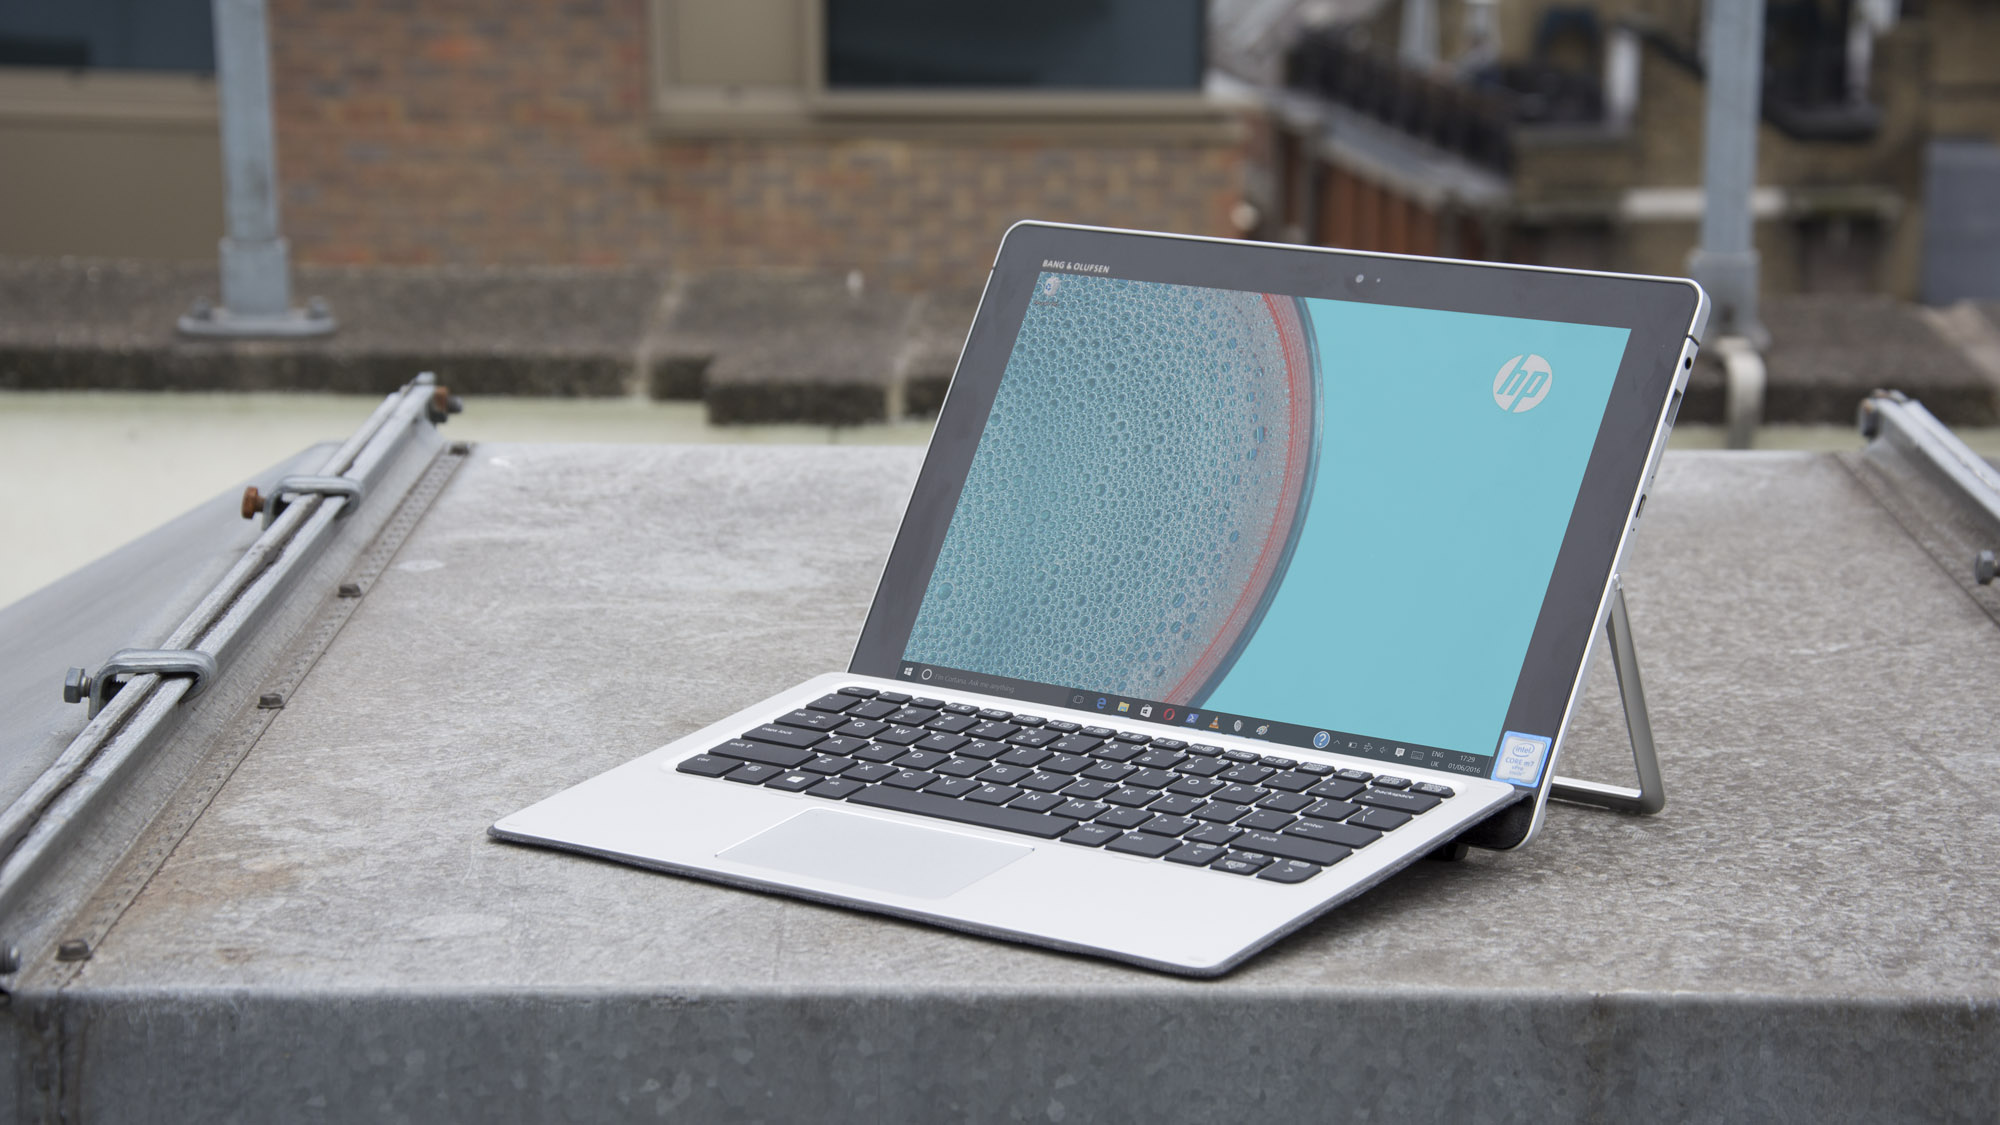 Revisió d'HP Elite x2: supera el Surface Pro 4 d'algunes maneres (però no d'altres)